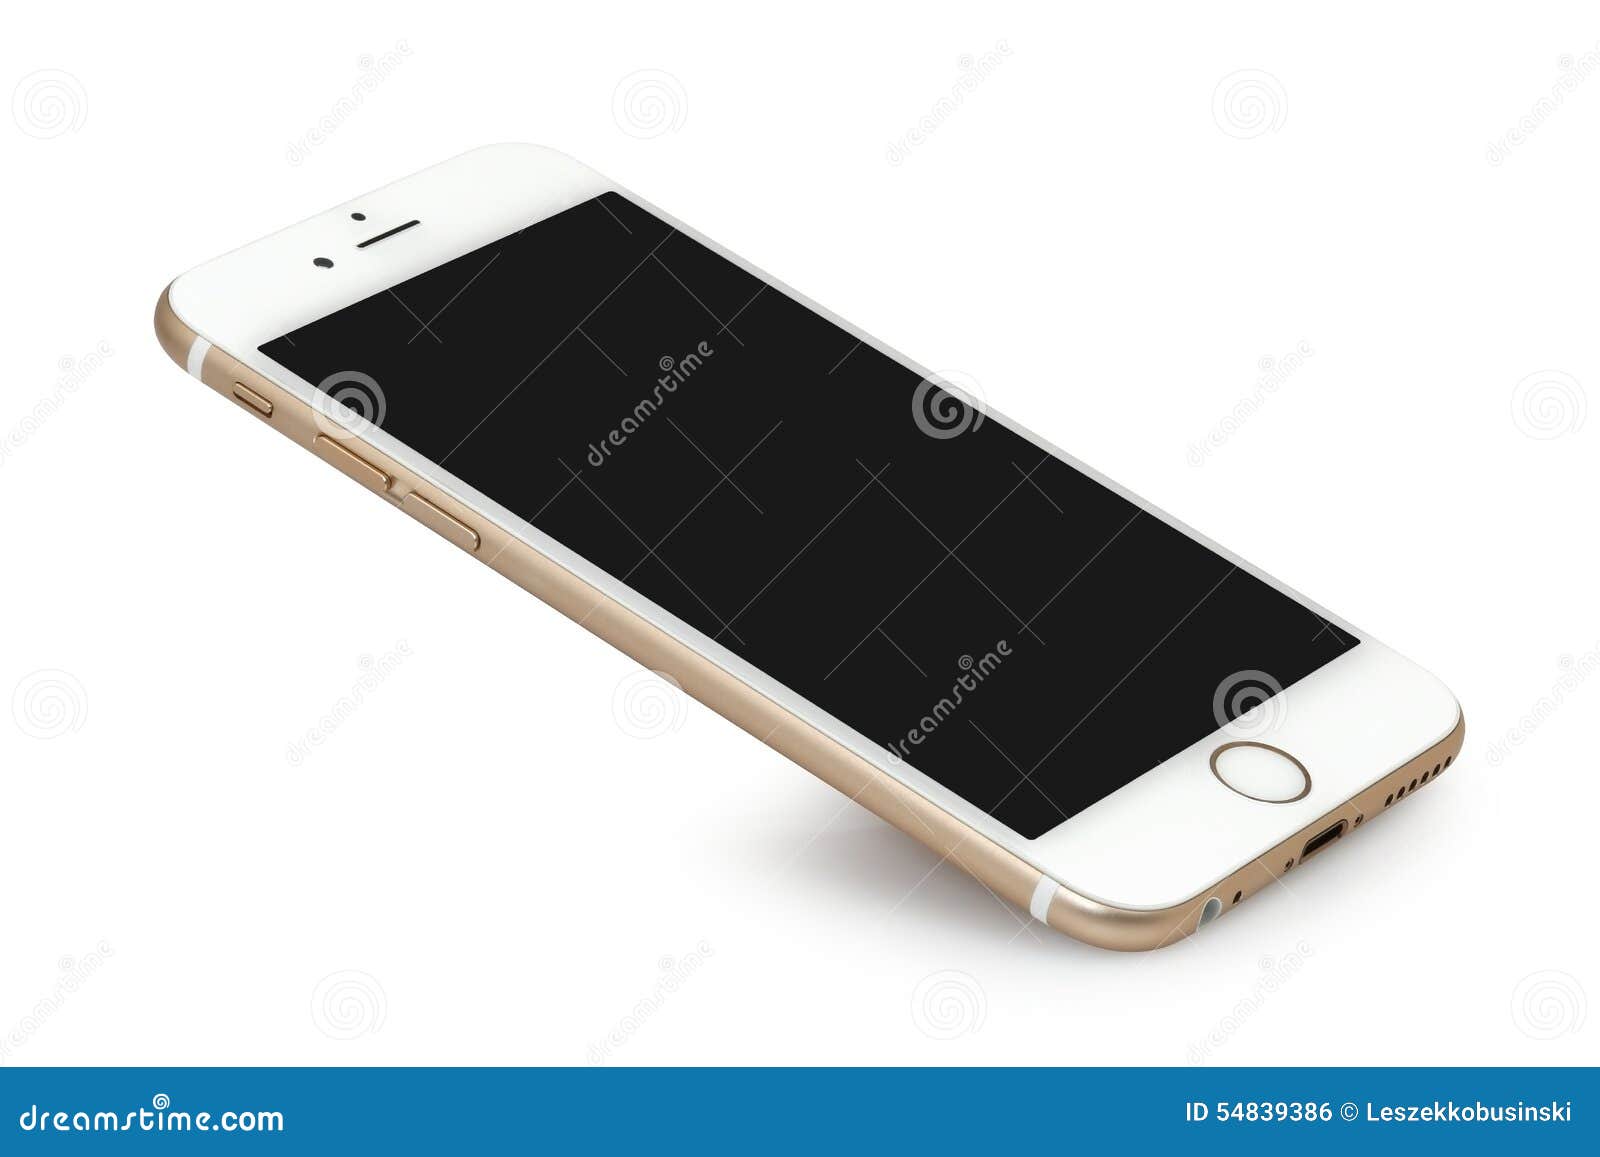 Ảnh iPhone 6S trống màn hình sẽ giúp bạn dễ dàng hình dung và sáng tạo cho chiếc iPhone của mình. Với màn hình trống, bạn có thể giả lập những ứng dụng, kiểu dáng hoặc hình nền mới, từ đó giúp bạn tạo được sự khác biệt và nổi bật giữa đám đông. Hãy thưởng thức và trải nghiệm sản phẩm của chúng tôi.